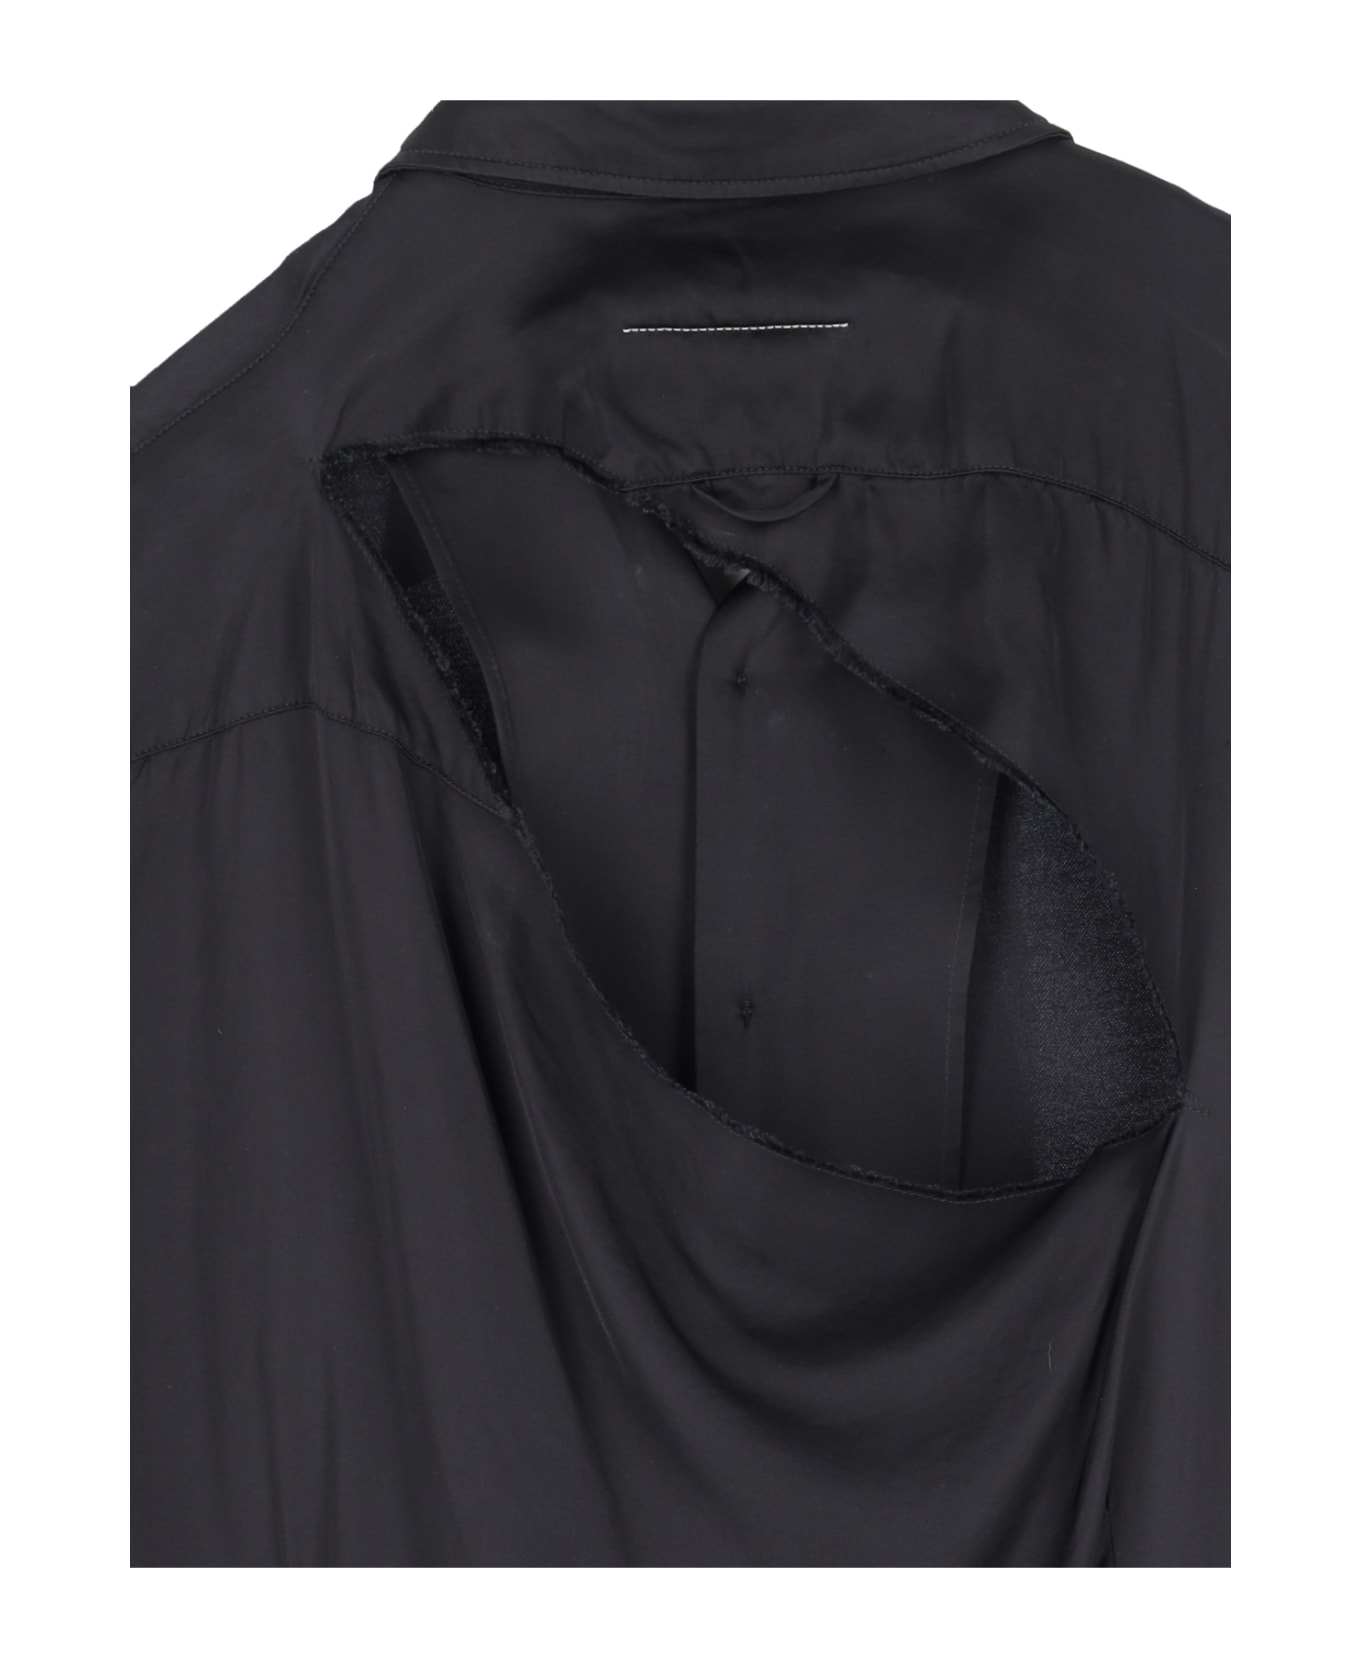 MM6 Maison Margiela Viscose Sleeveless Shirt - Black